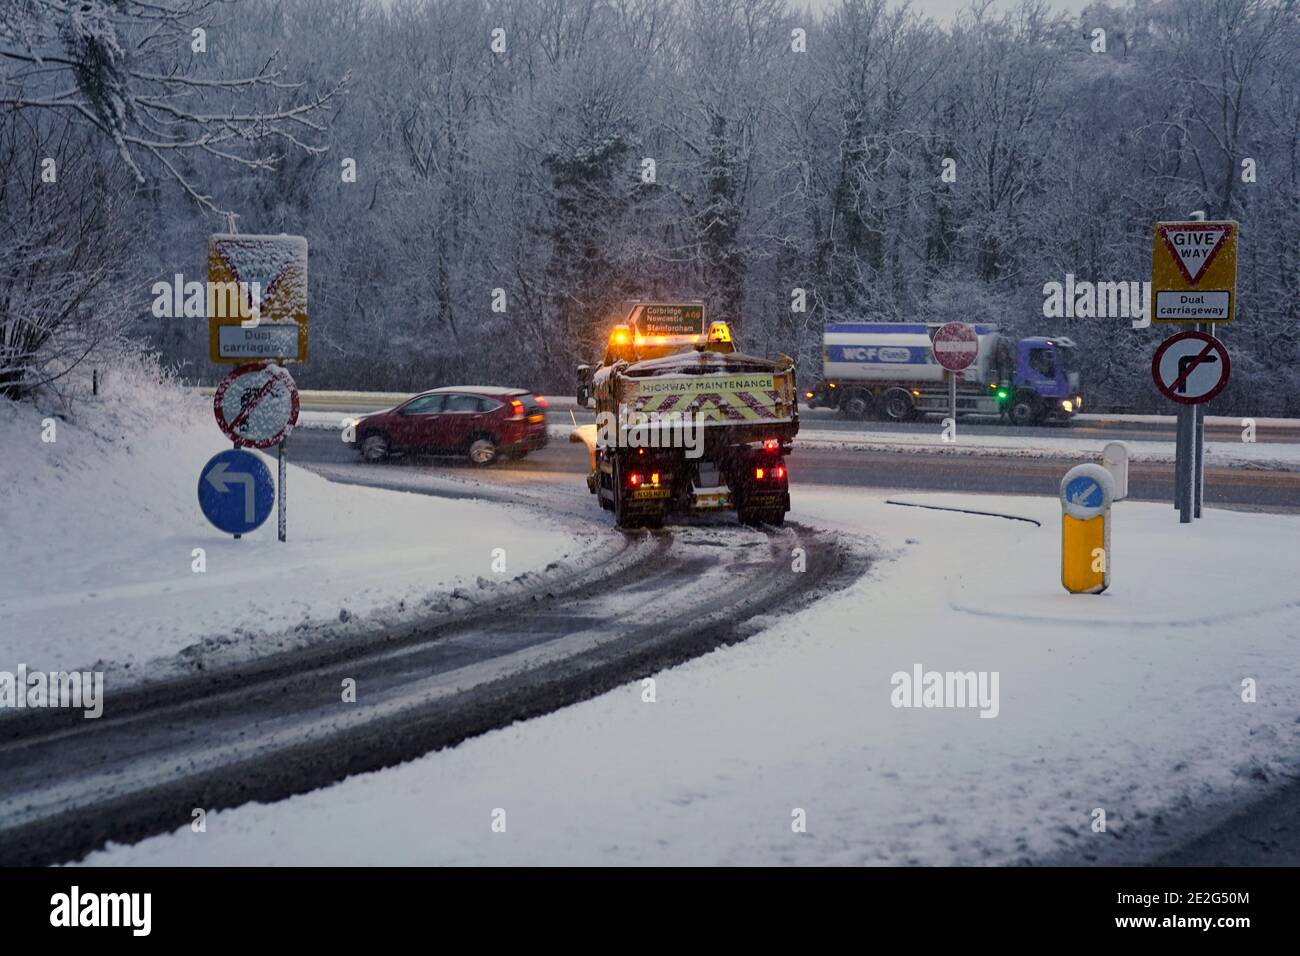 Ein Schneepflug räumt die A69 in Stocksfield, nahe Newcastle. In dieser Woche wird Großbritannien mit Starkschneefall und Glatteisregen überschlagen, wobei Warnungen über mögliche Stromausfälle und Reiseverzögerungen ausgegeben werden. Stockfoto